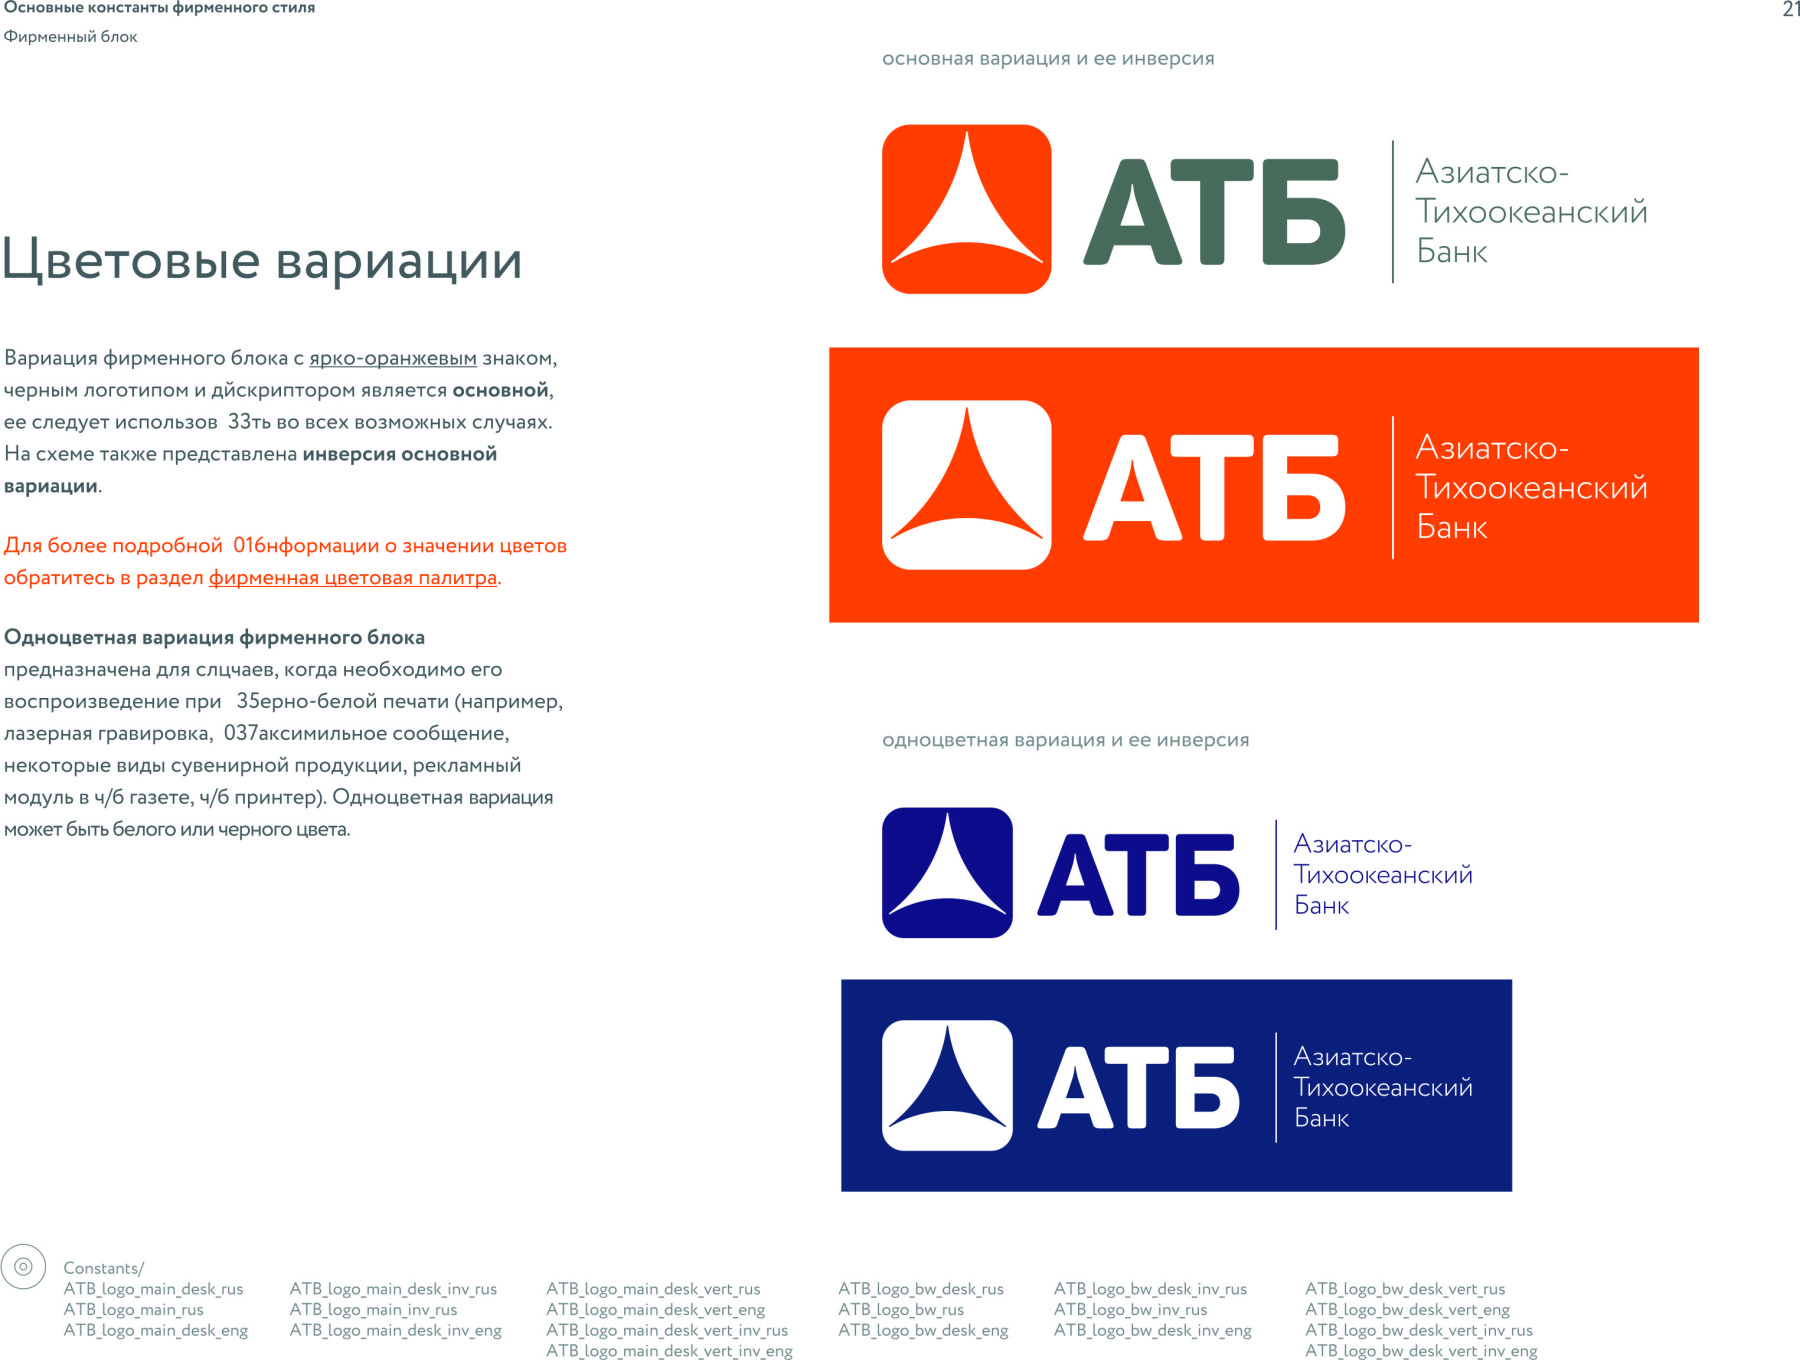 Атб банк курс перевода. Азиатско-Тихоокеанский банк логотип. АТБ банк.